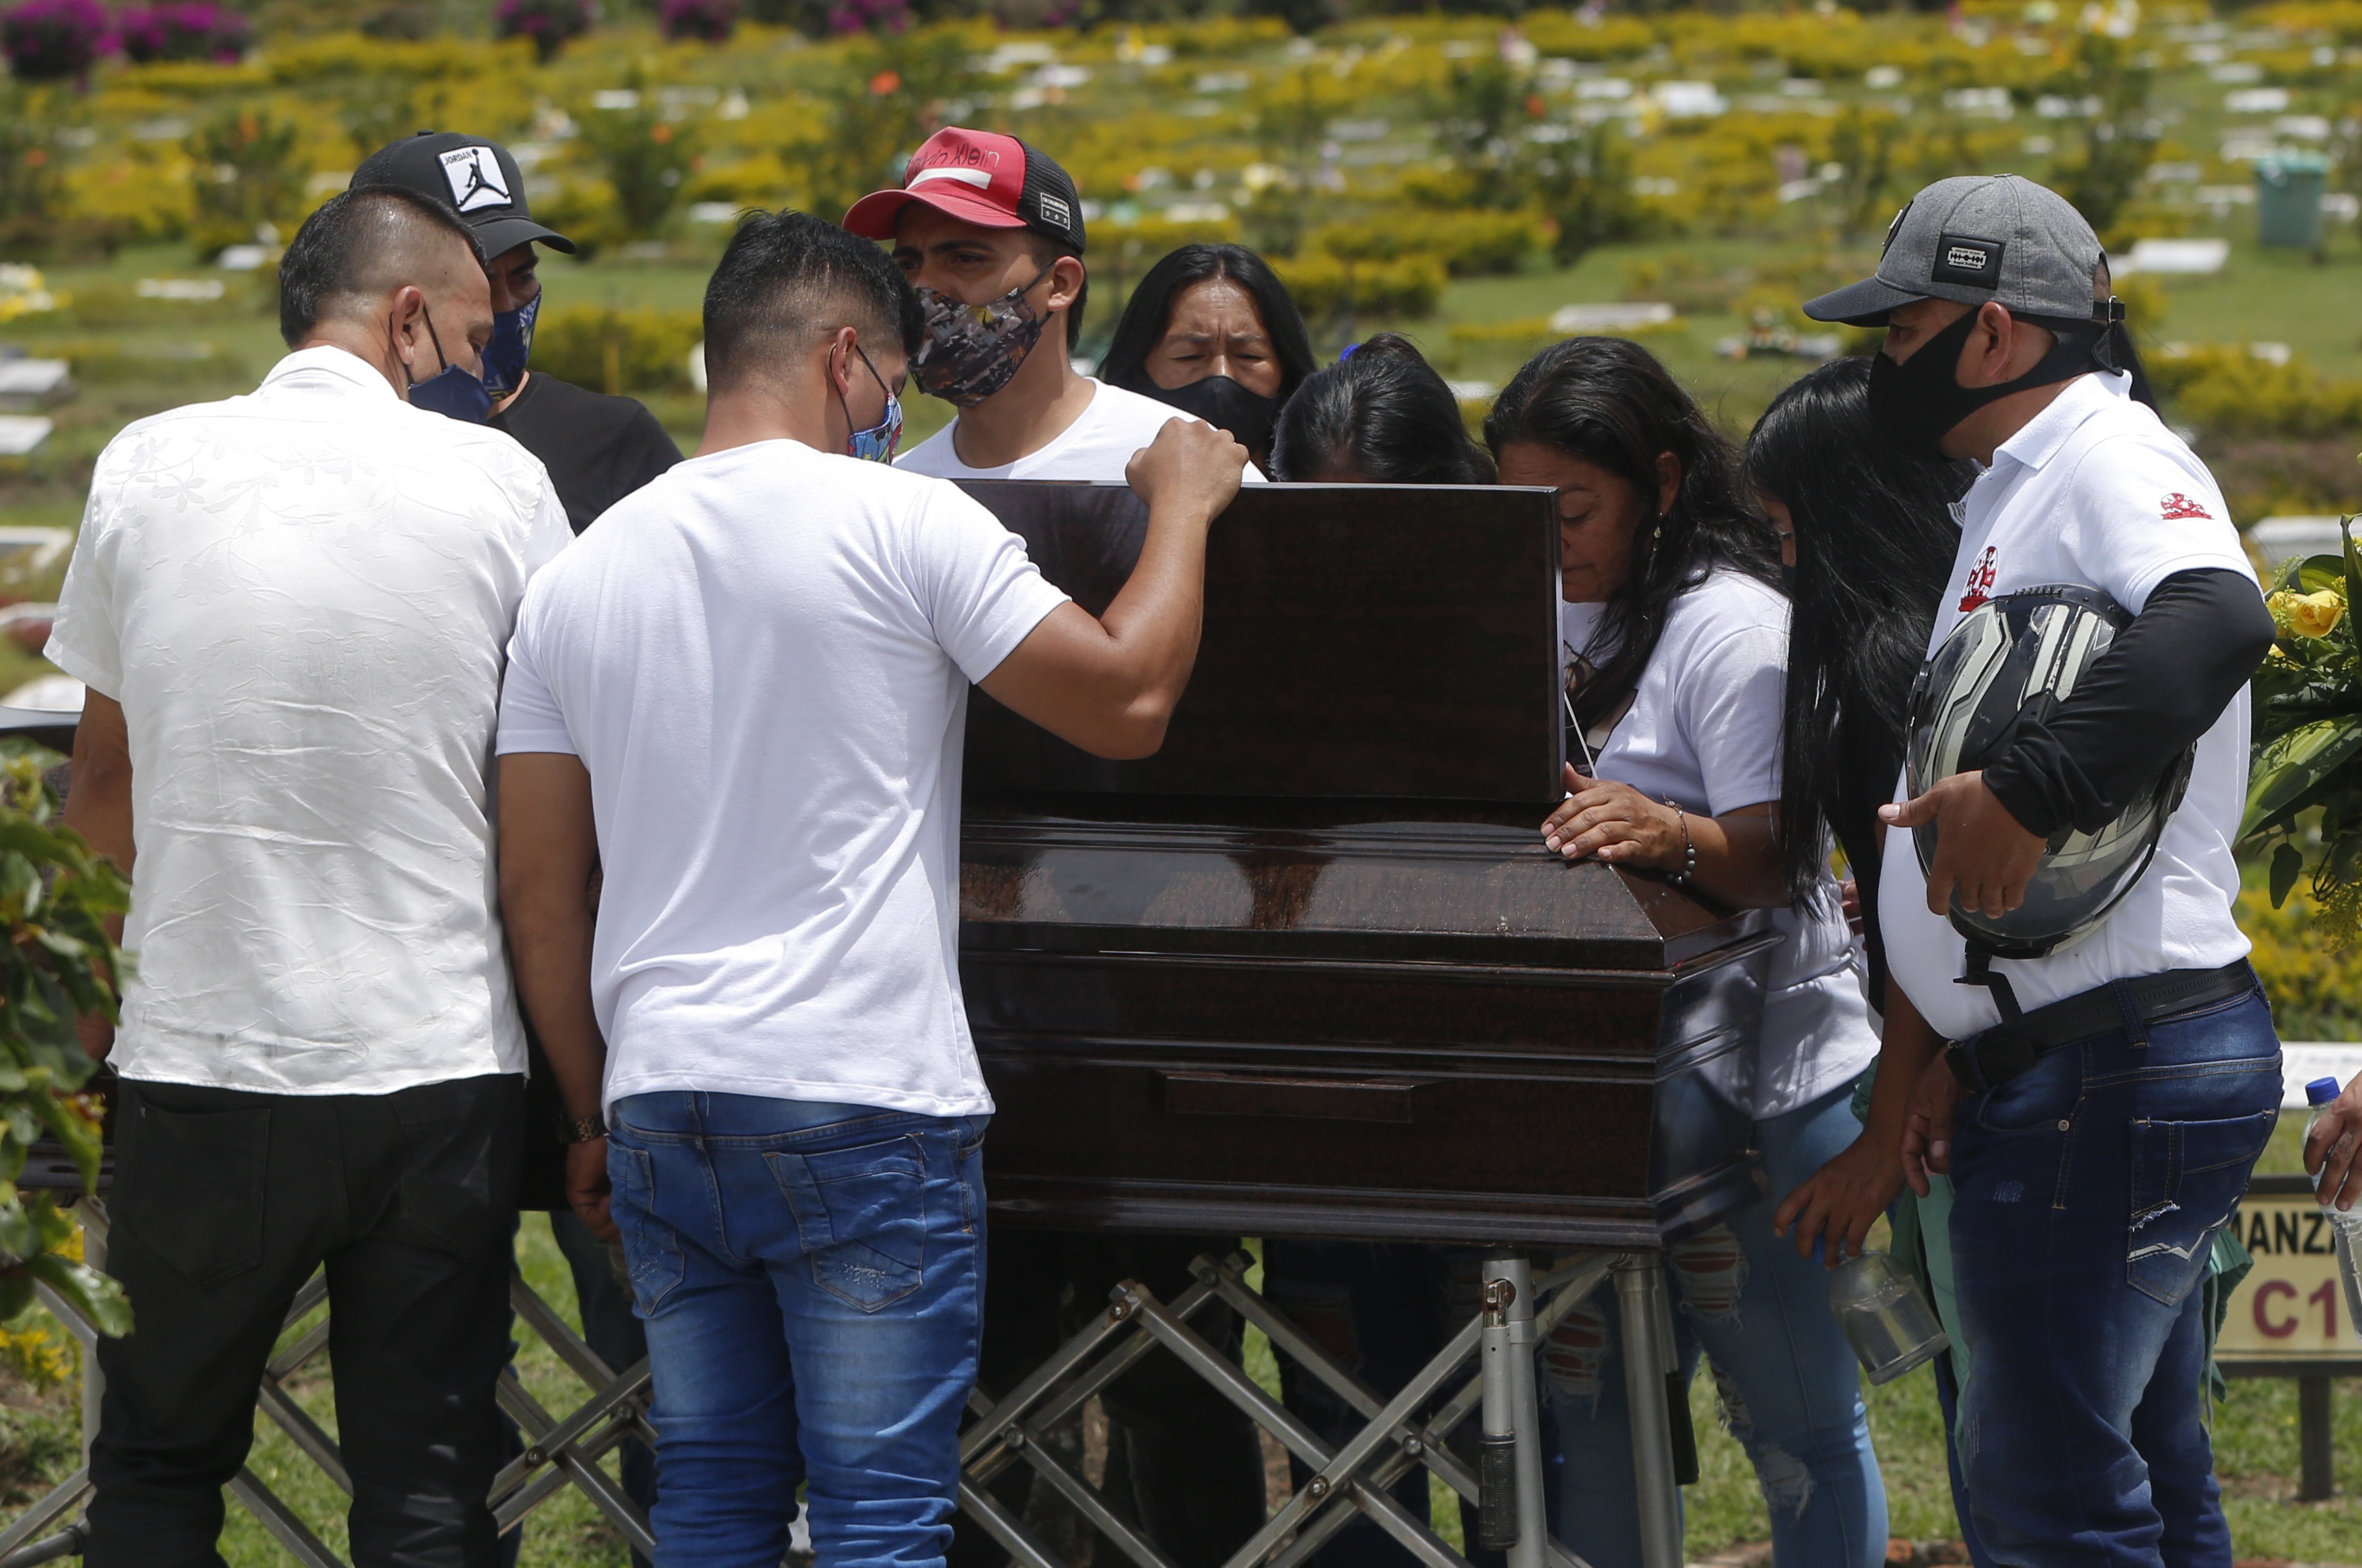 Familiares y amigos de Yoimar Muñoz, quien fue asesinado en una masacre en la provincia del Cauca, rodean su féretro en su funeral, en Popayán (Colombia). EFE/Ernesto Guzmán Jr.
